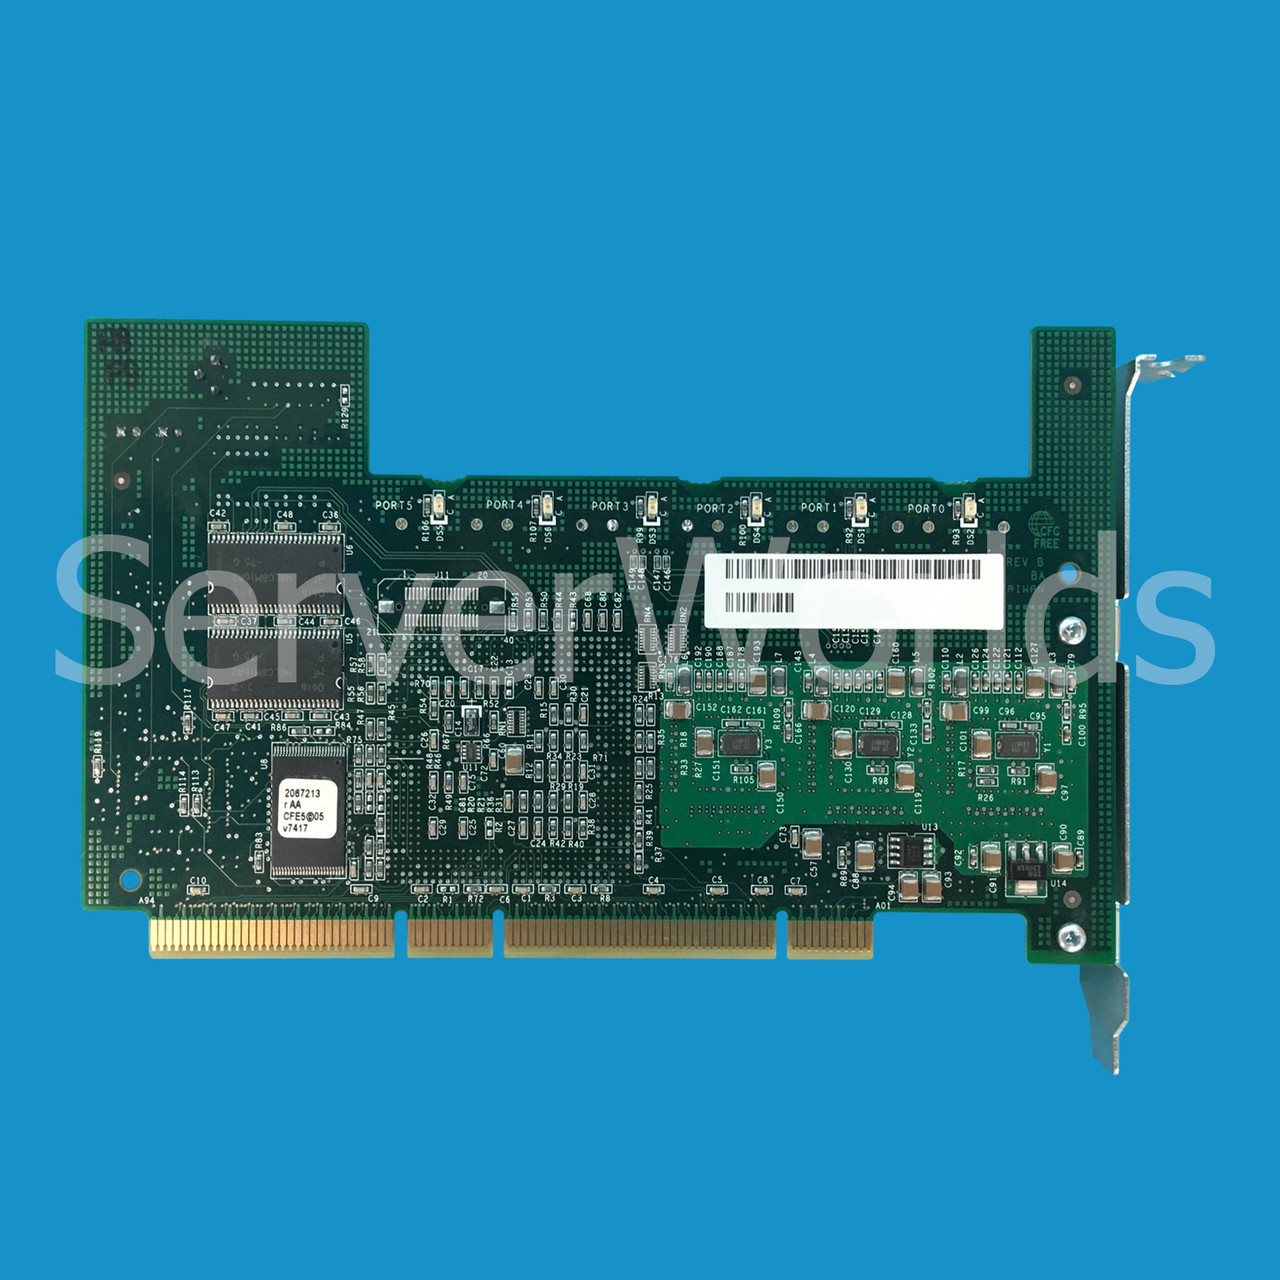 Dell H2052 Cerc 6 PCI-X SATA 6 Channel 1.5GBPS Raid Controller